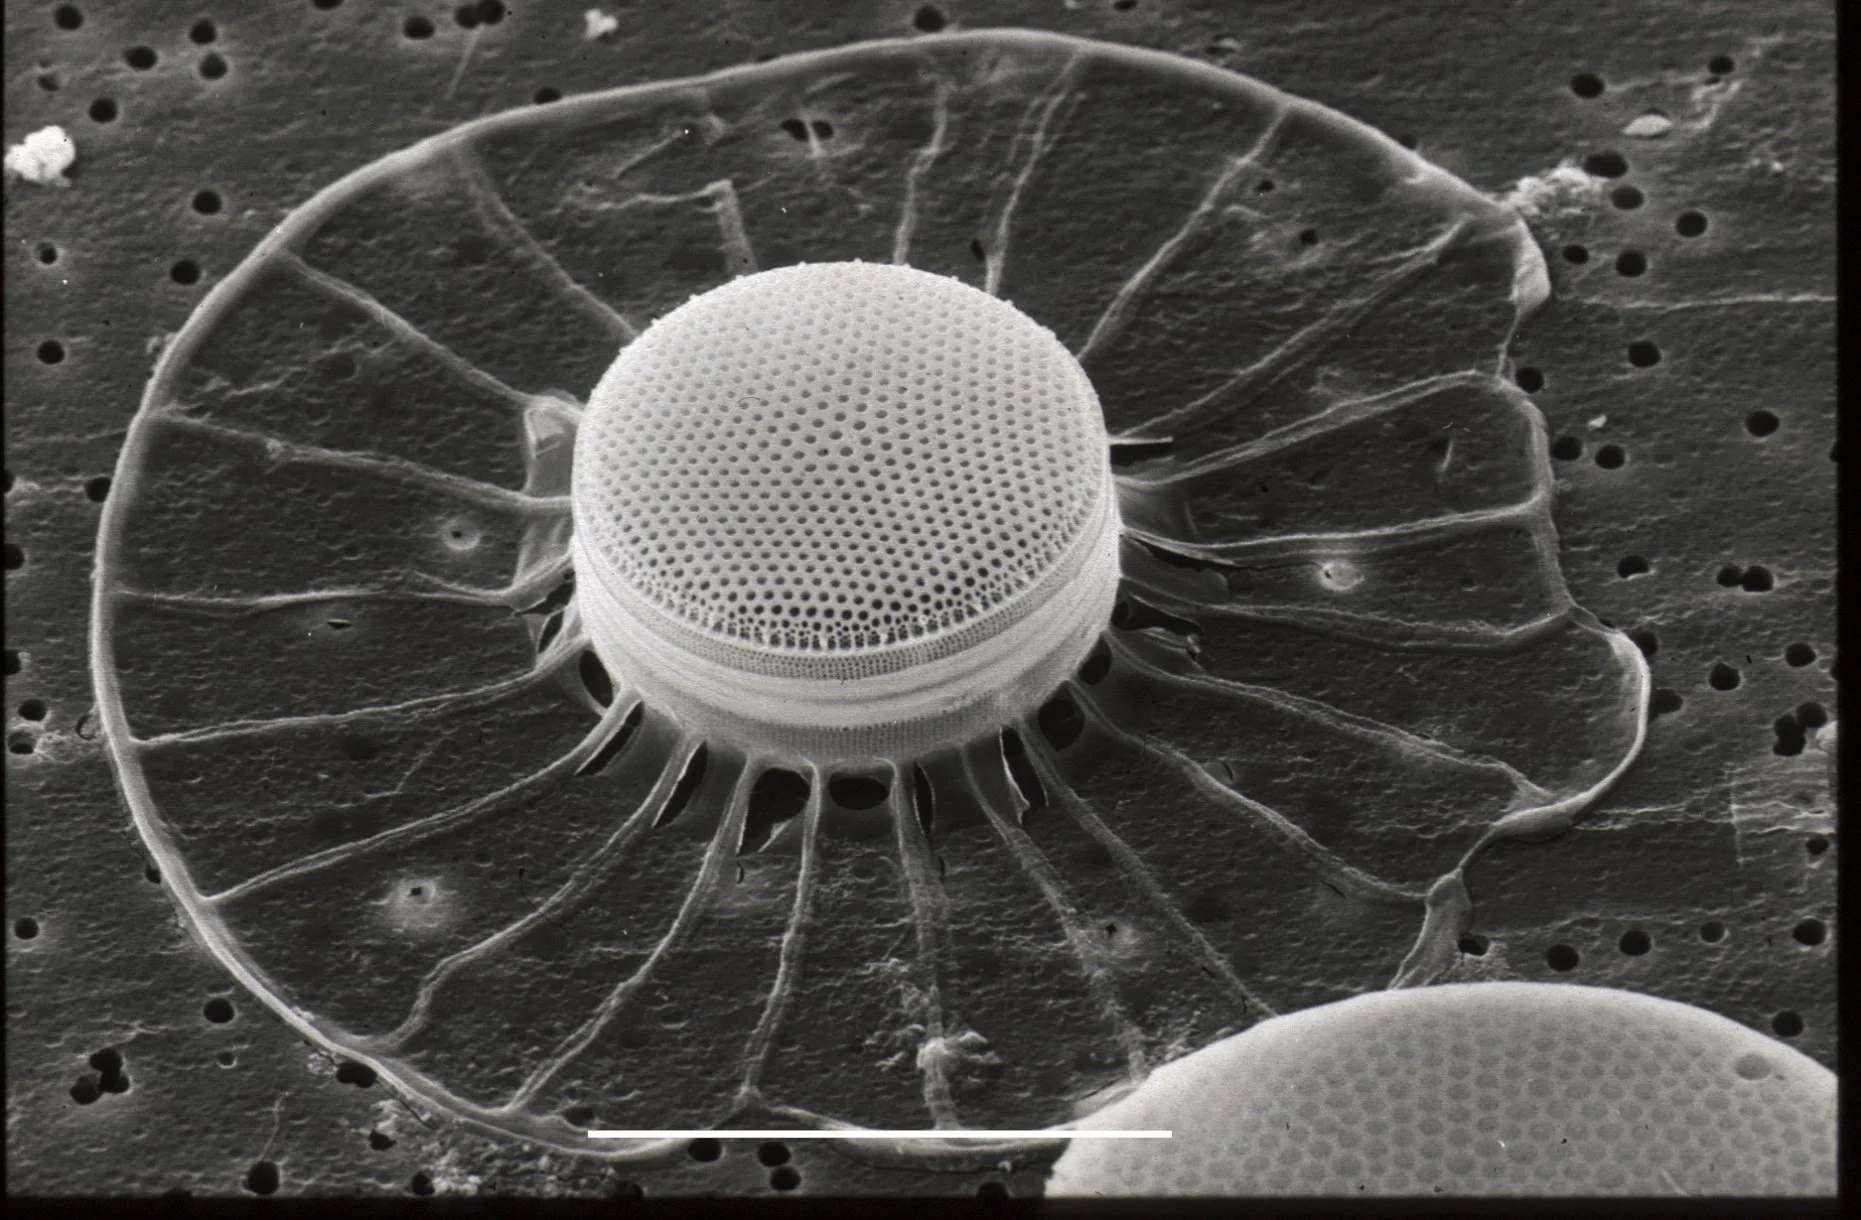 Electron microscopy of a diatom